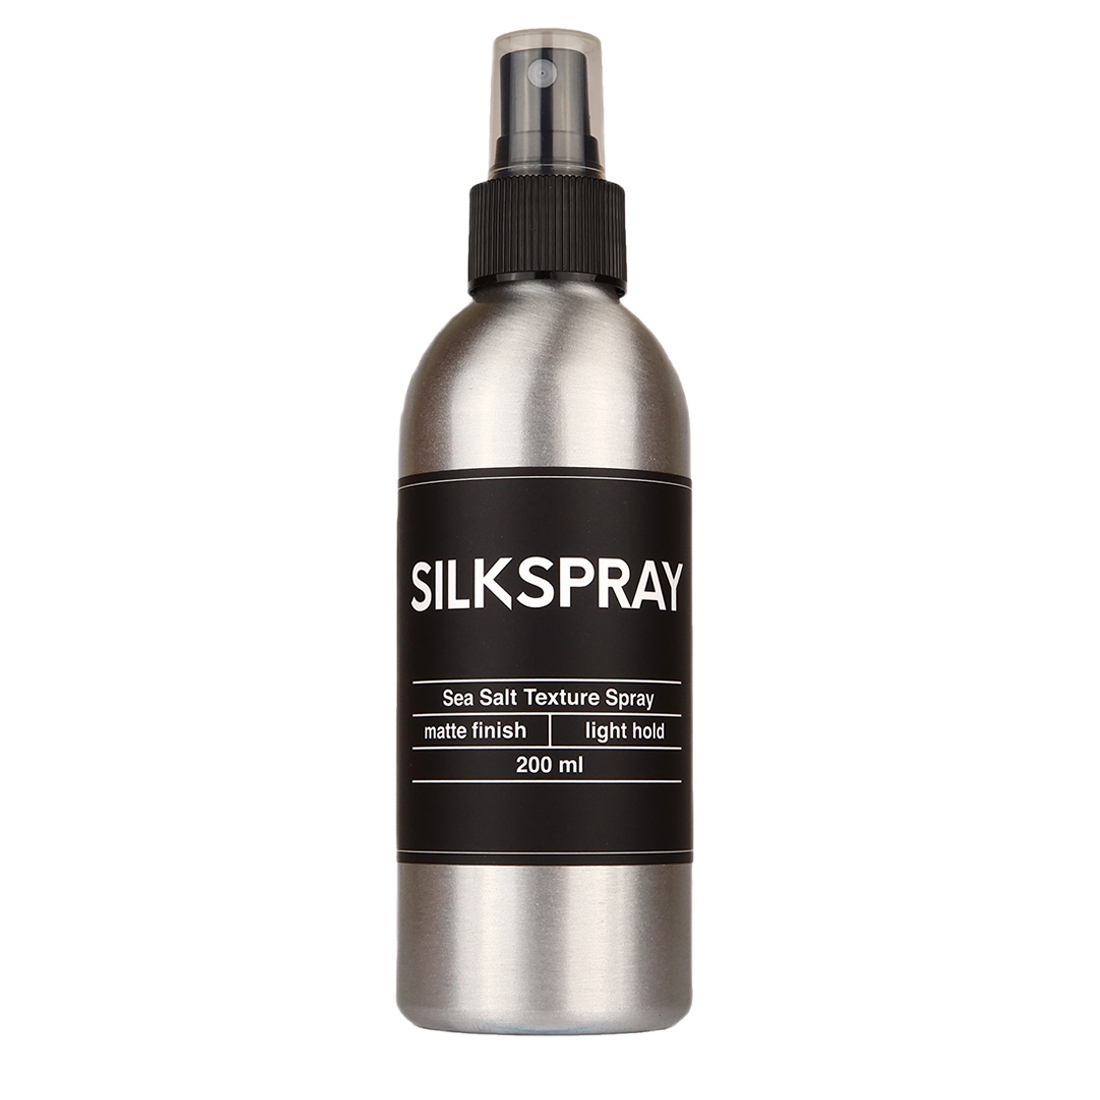 Лак для волос с морской солью Silkclay Silkspray, 200 мл дом природы мыло мягкое бельди с морской солью и ламинарией 200 мл 200 г